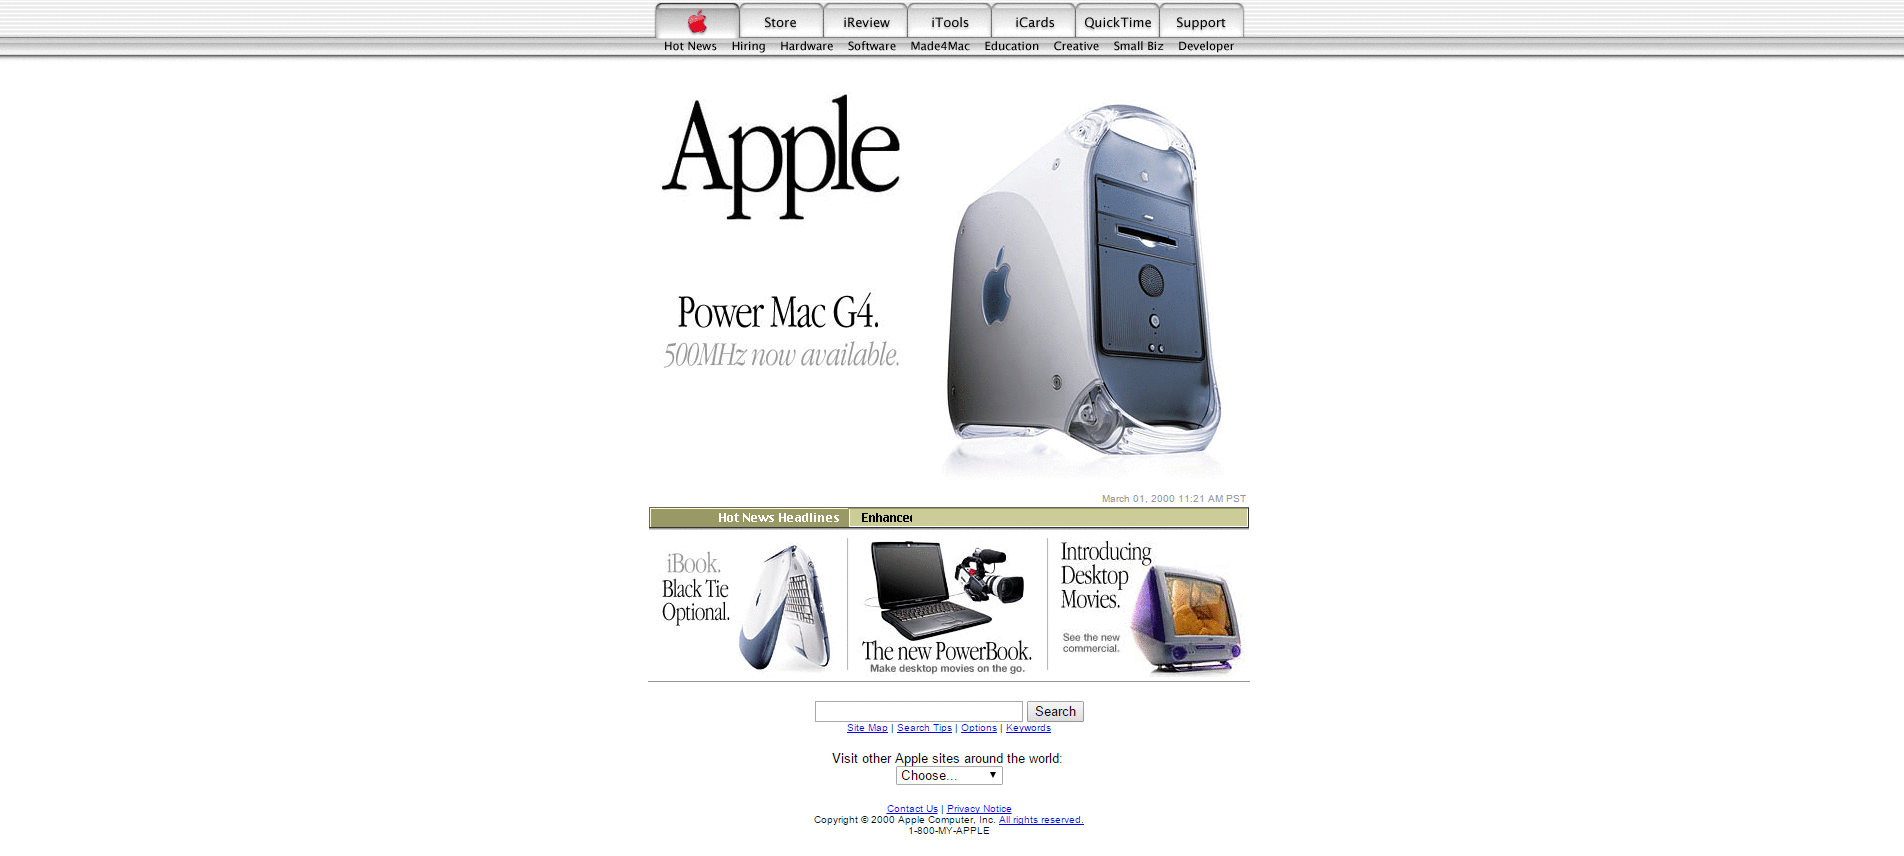 Website Design for apple.com in 2000